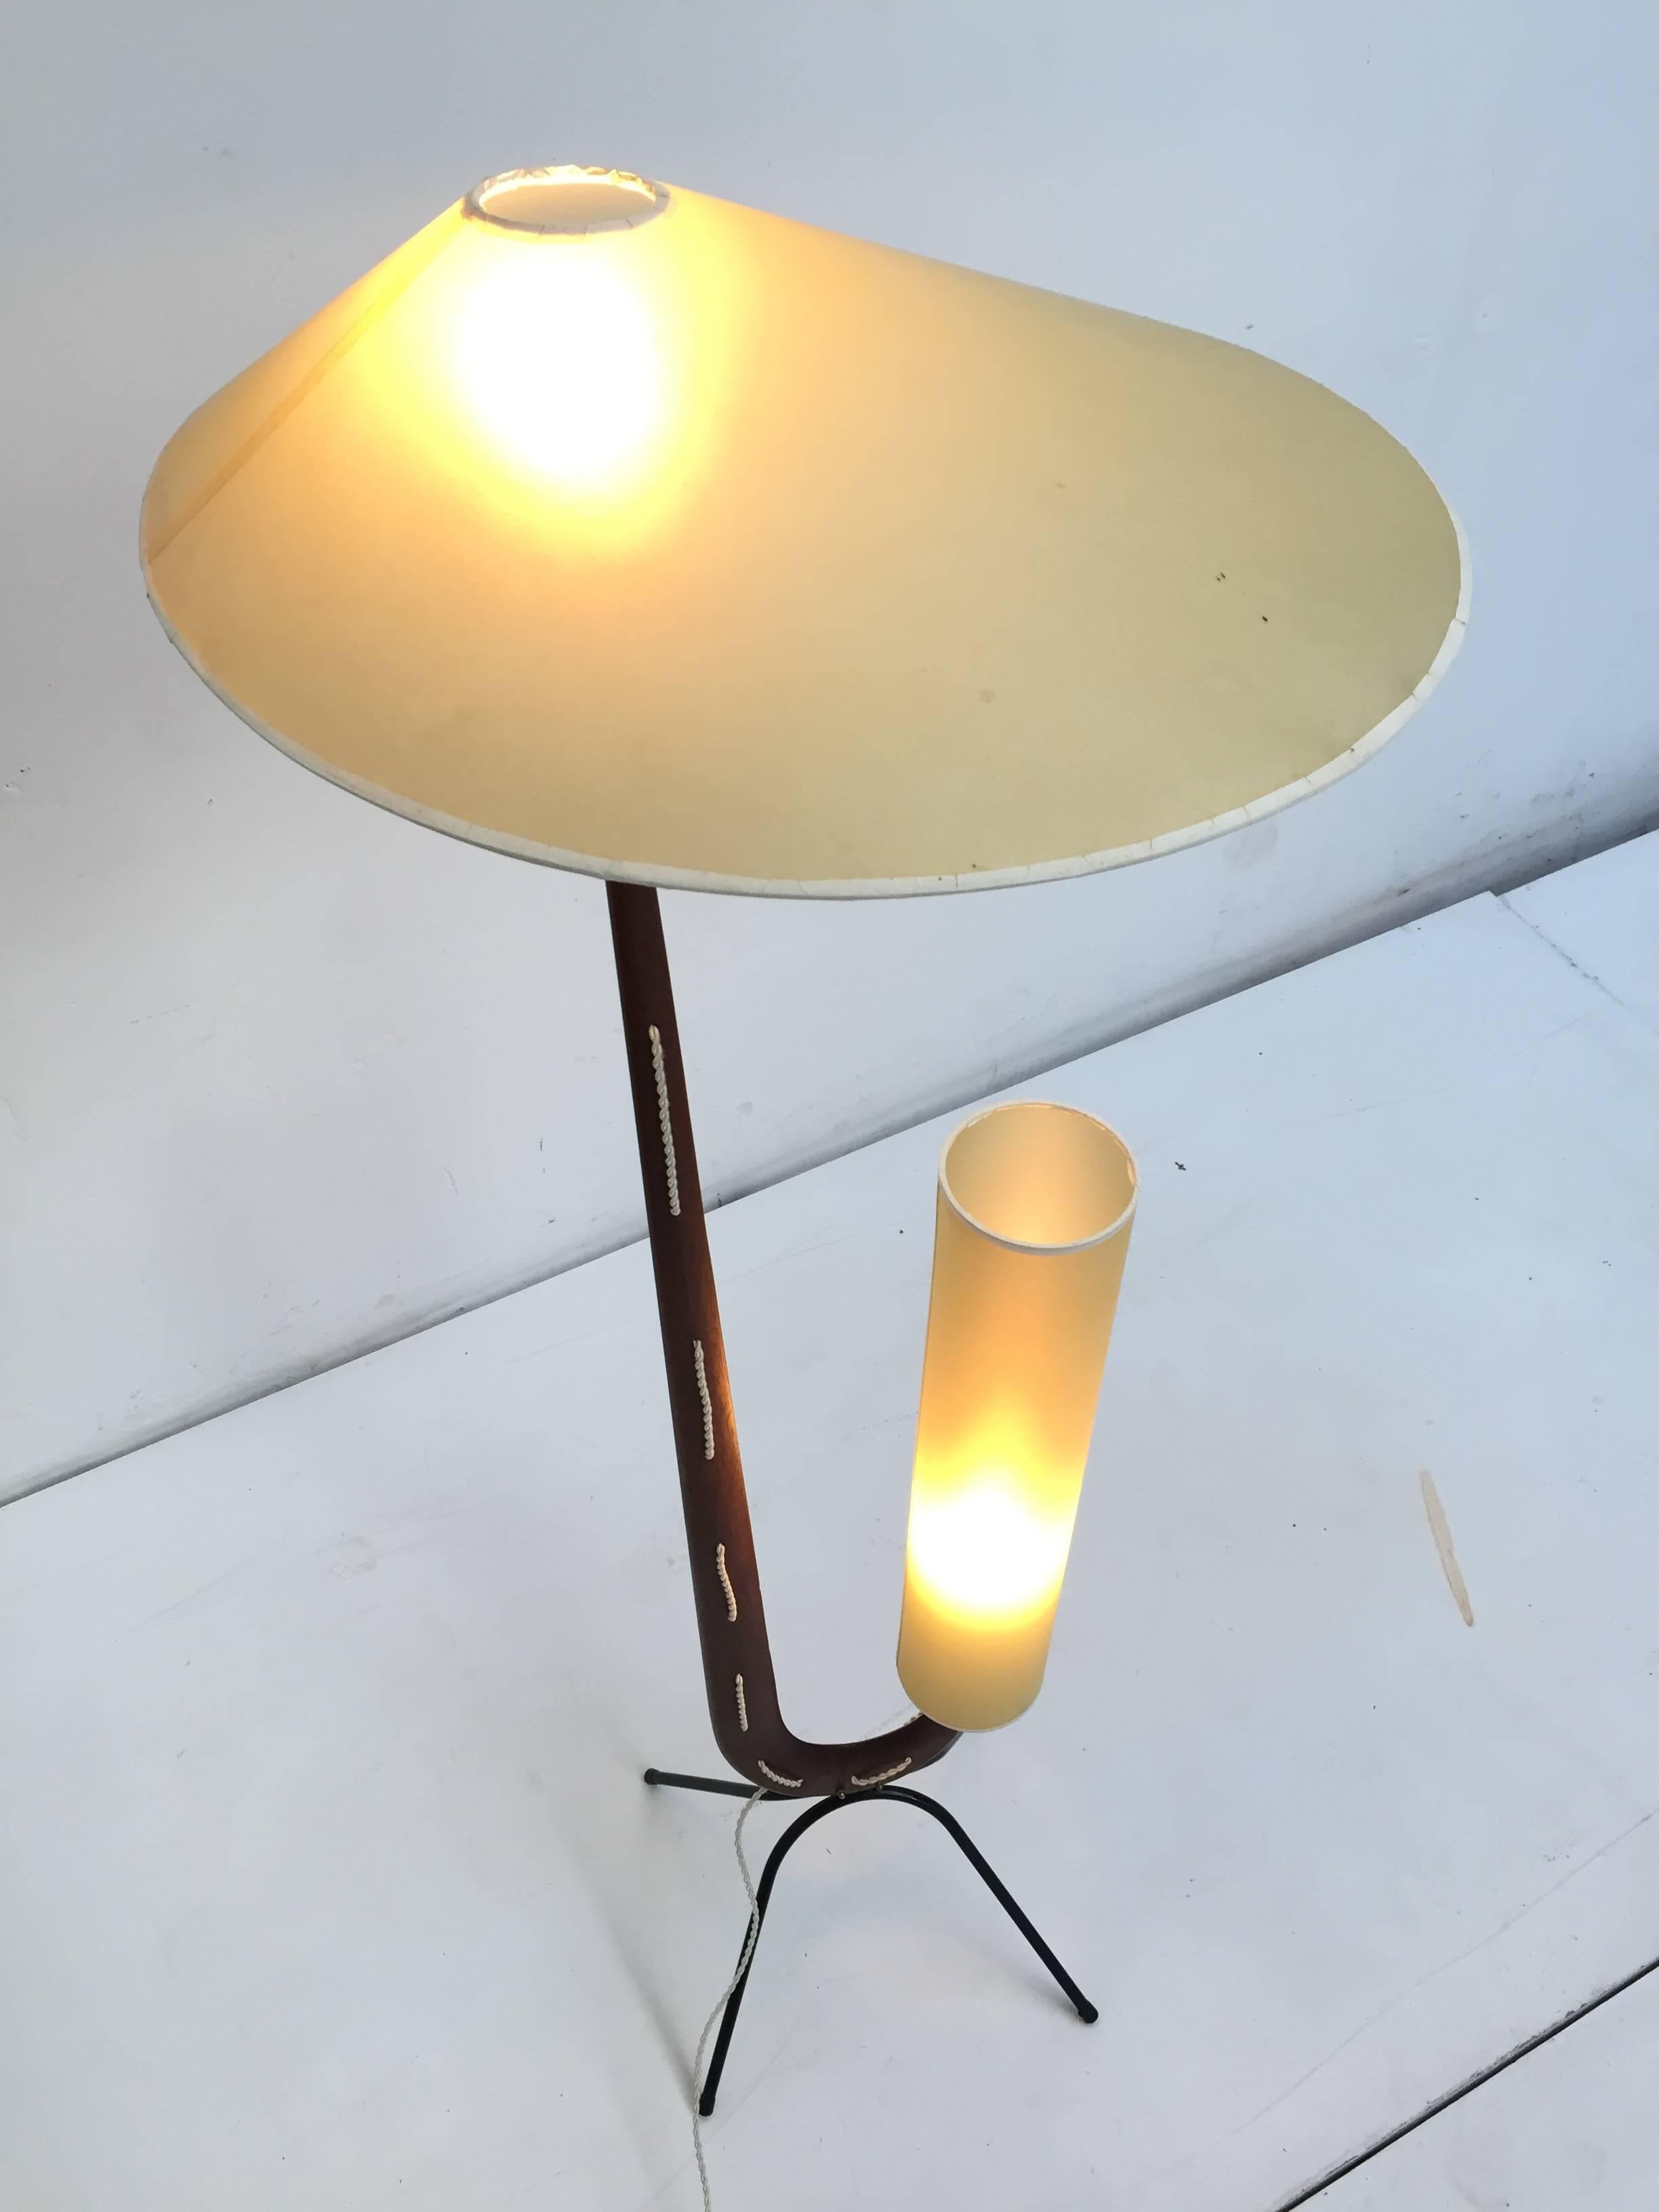 Au début des années 1950, la société française Rispal a produit plusieurs modèles d'éclairage très sculptés. Ces lampadaires très expressifs ont été inspirés par la sculpture abstraite contemporaine, notamment par le travail de l'artiste Hans Arp,